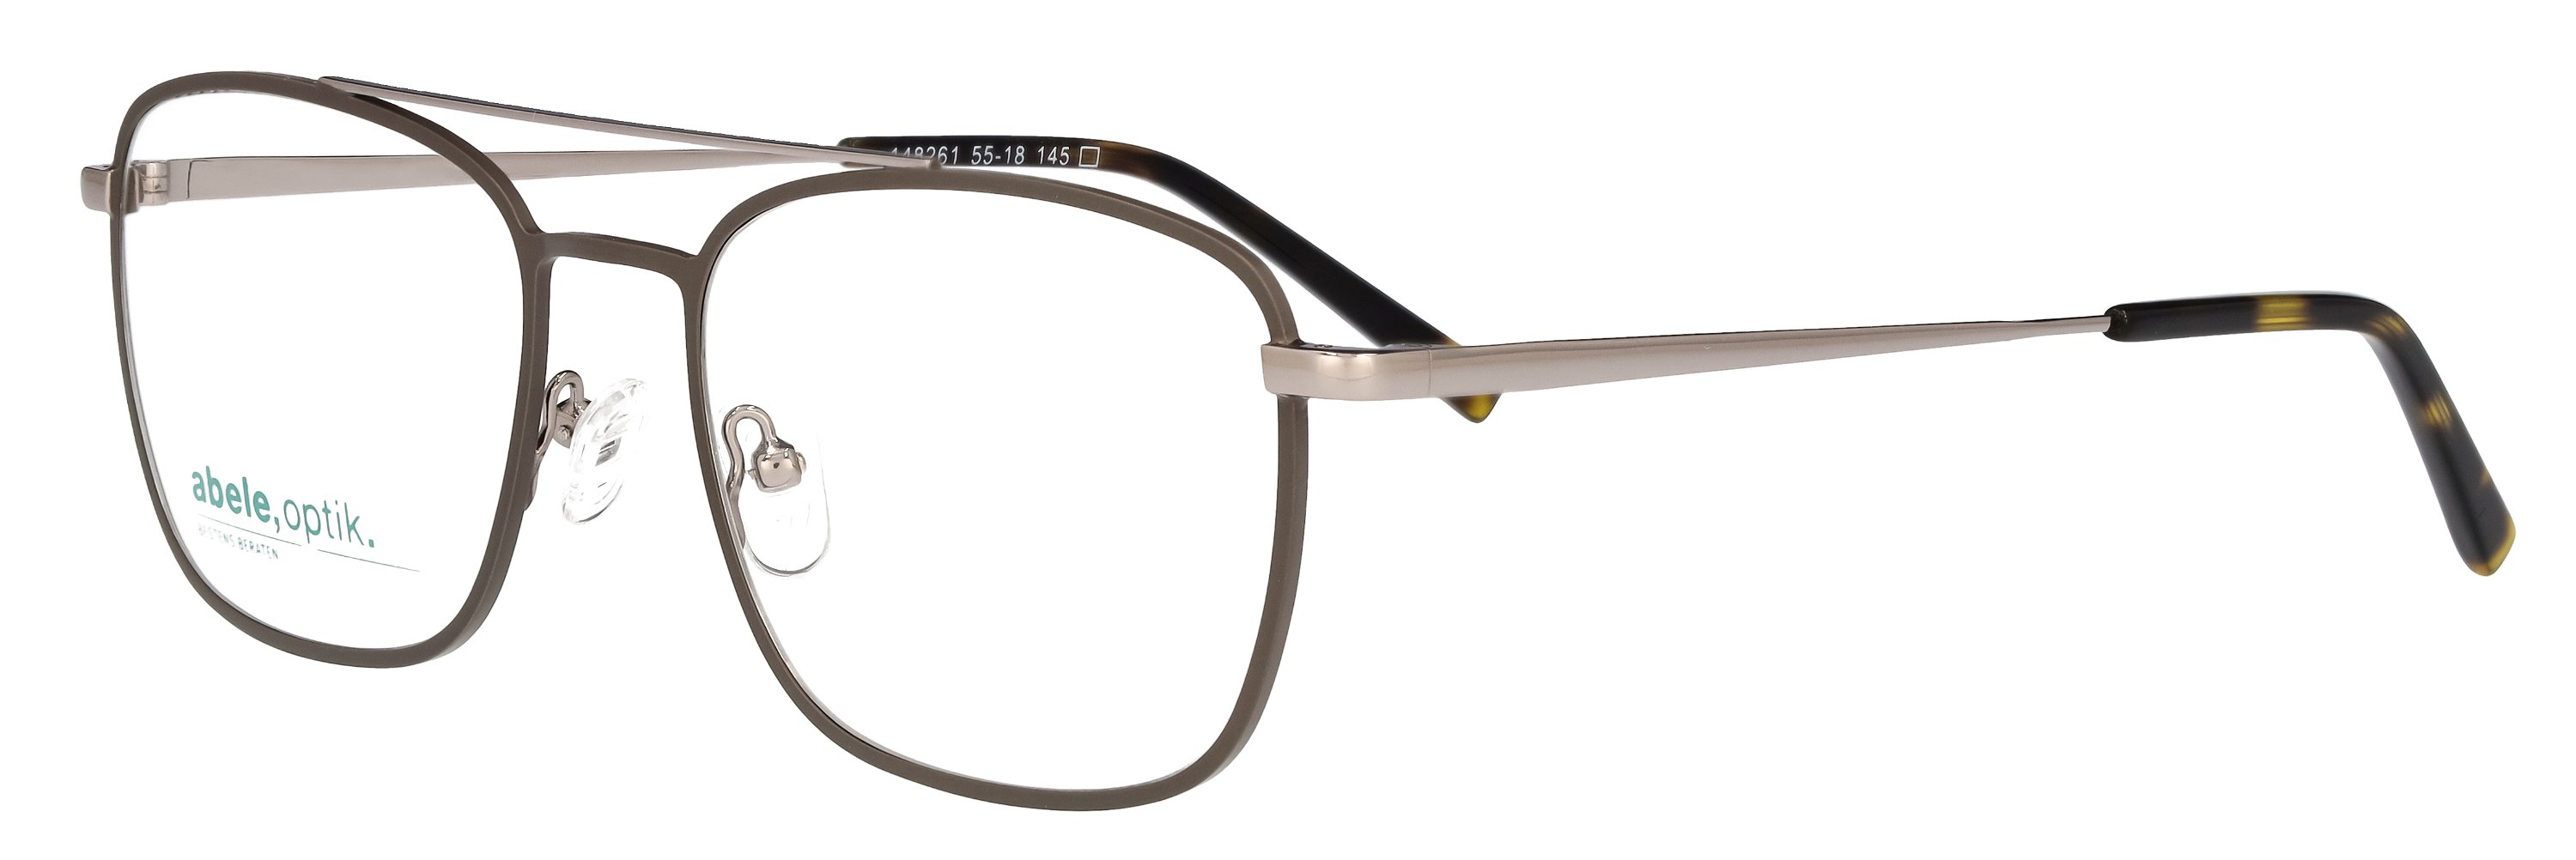 abele optik Brille 148261 für Herren in grau matt silber